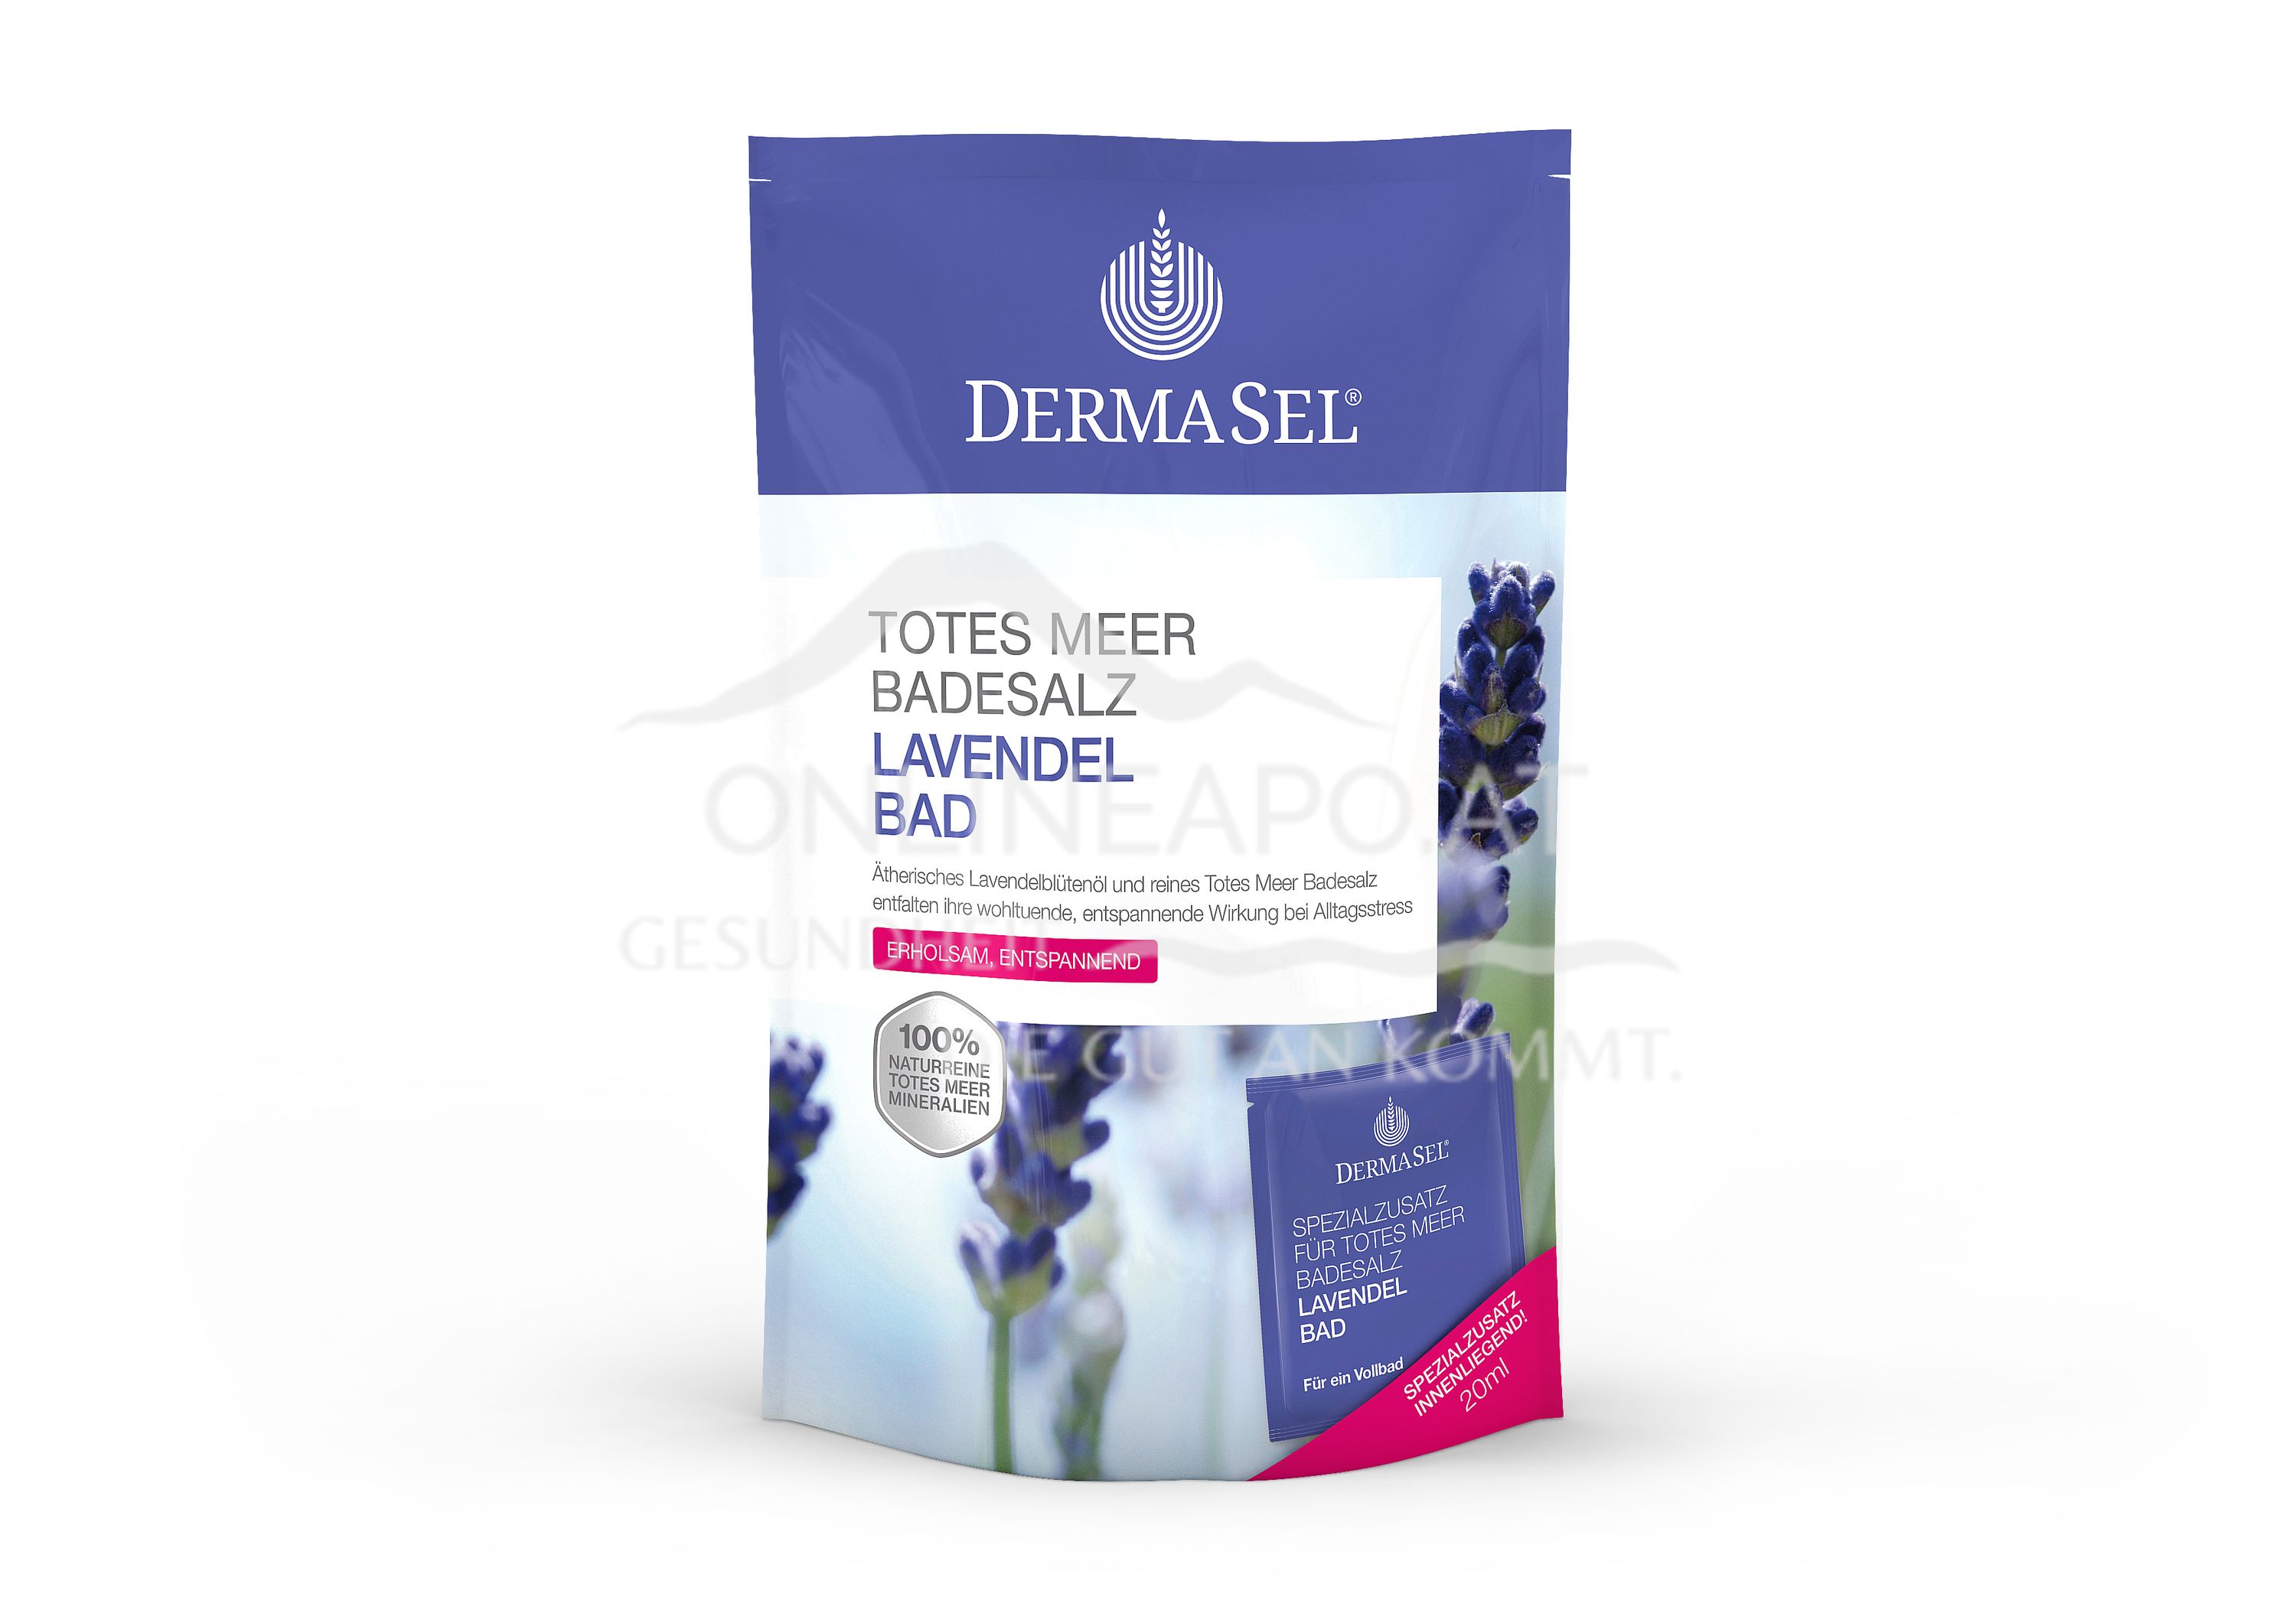 DermaSel® Totes Meer Badesalz Lavendel Bad